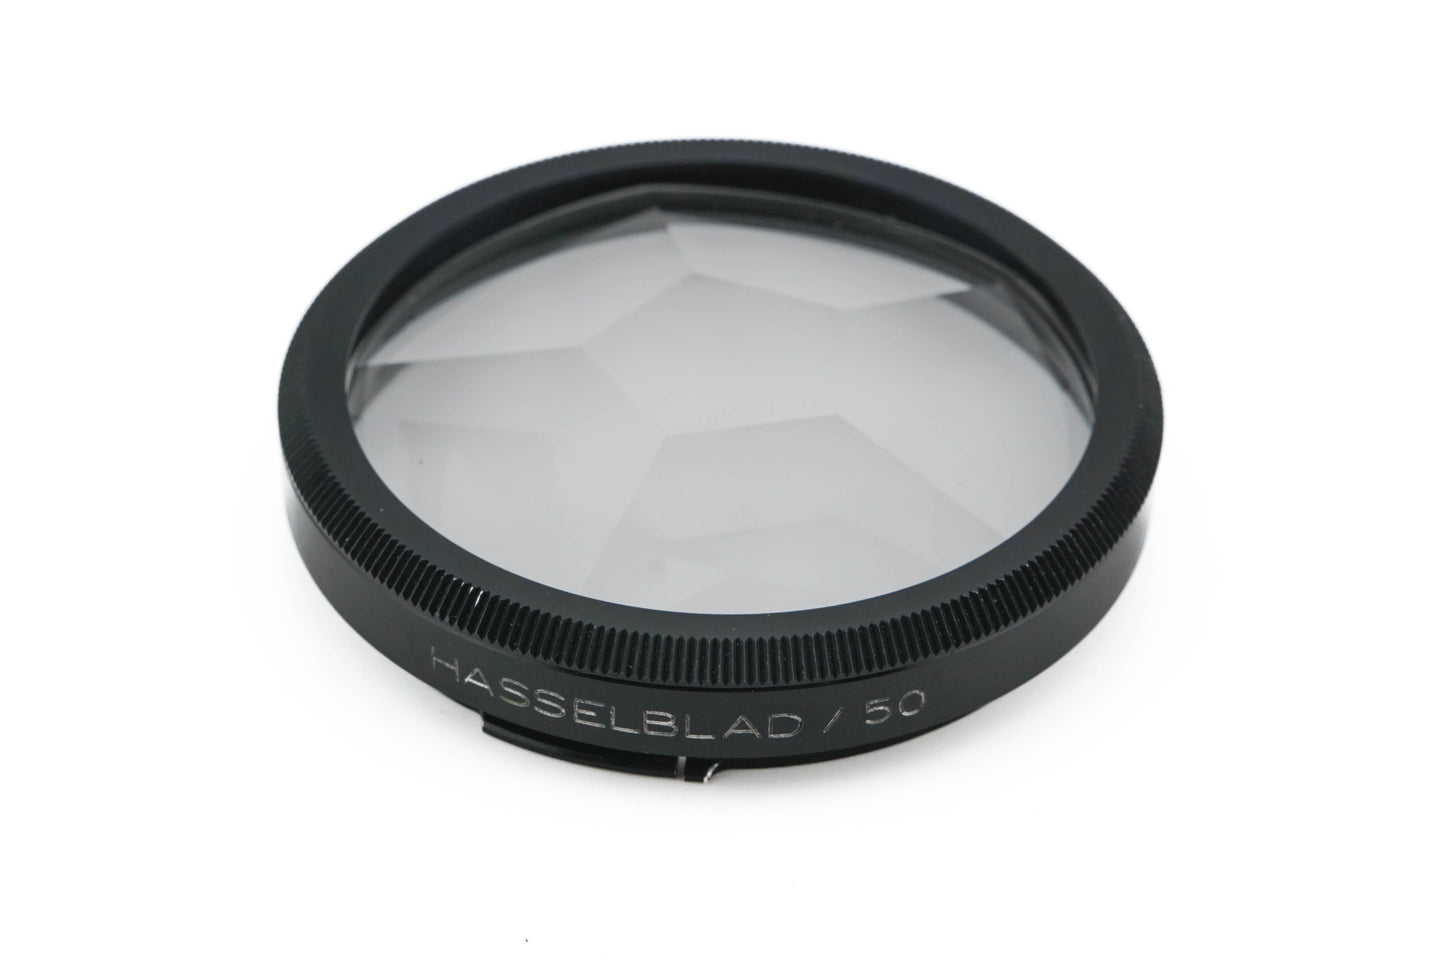 Hasselblad B50 Multi-Prism Lens MP6 (50687)